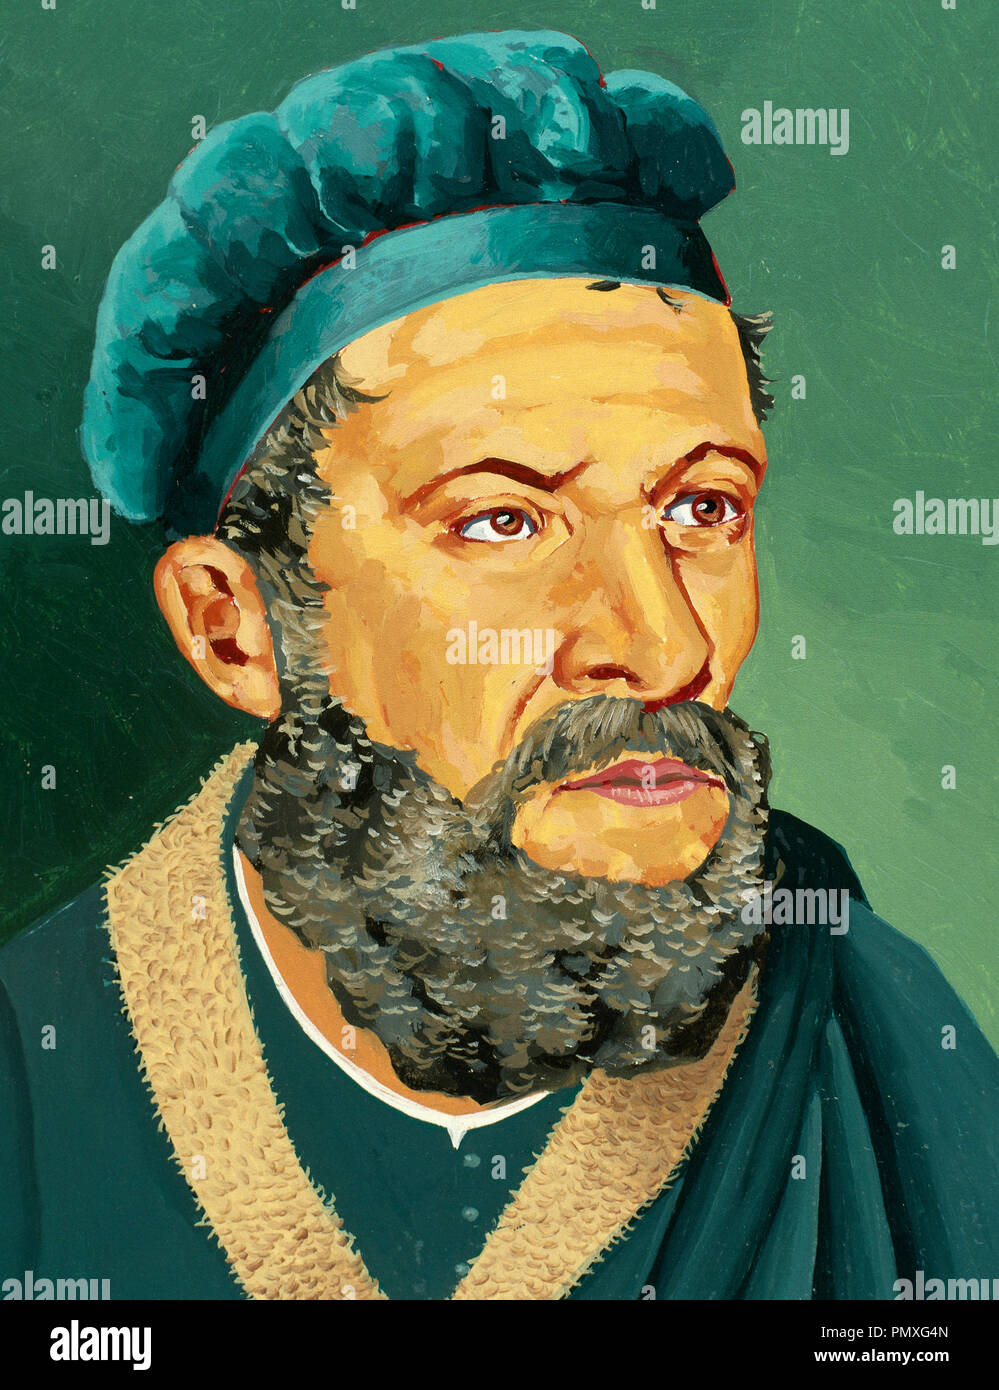 Marco Polo (1254-1324). Marchand italien, explorateur et écrivain. Portrait. L'aquarelle par Francisco Fonollosa, illustrateur espagnol (fin du 20e siècle) Banque D'Images